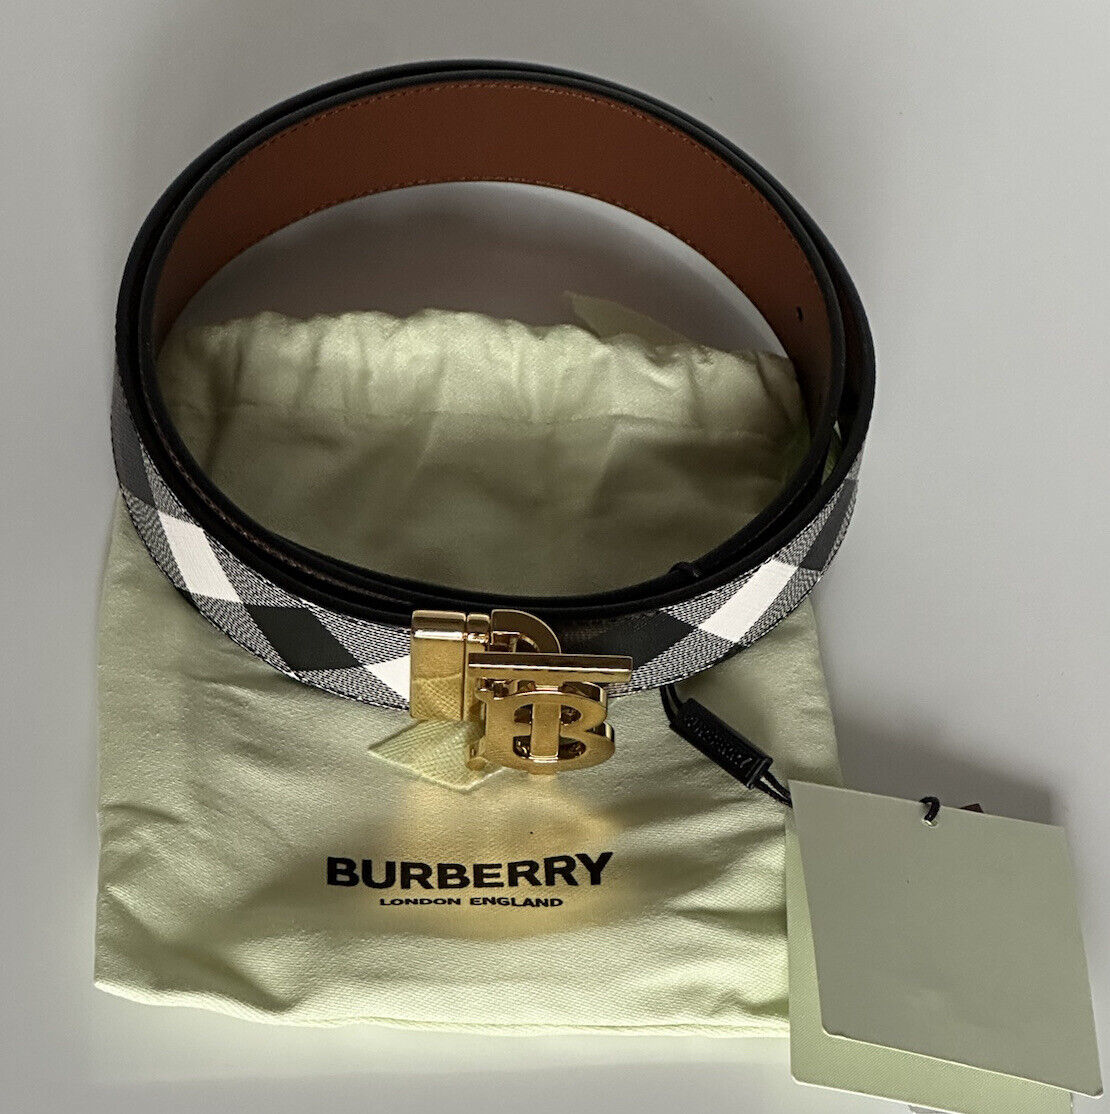 NWT $550 Двусторонний кожаный ремень Burberry TB цвета темной березы 34/85 8058348 Италия